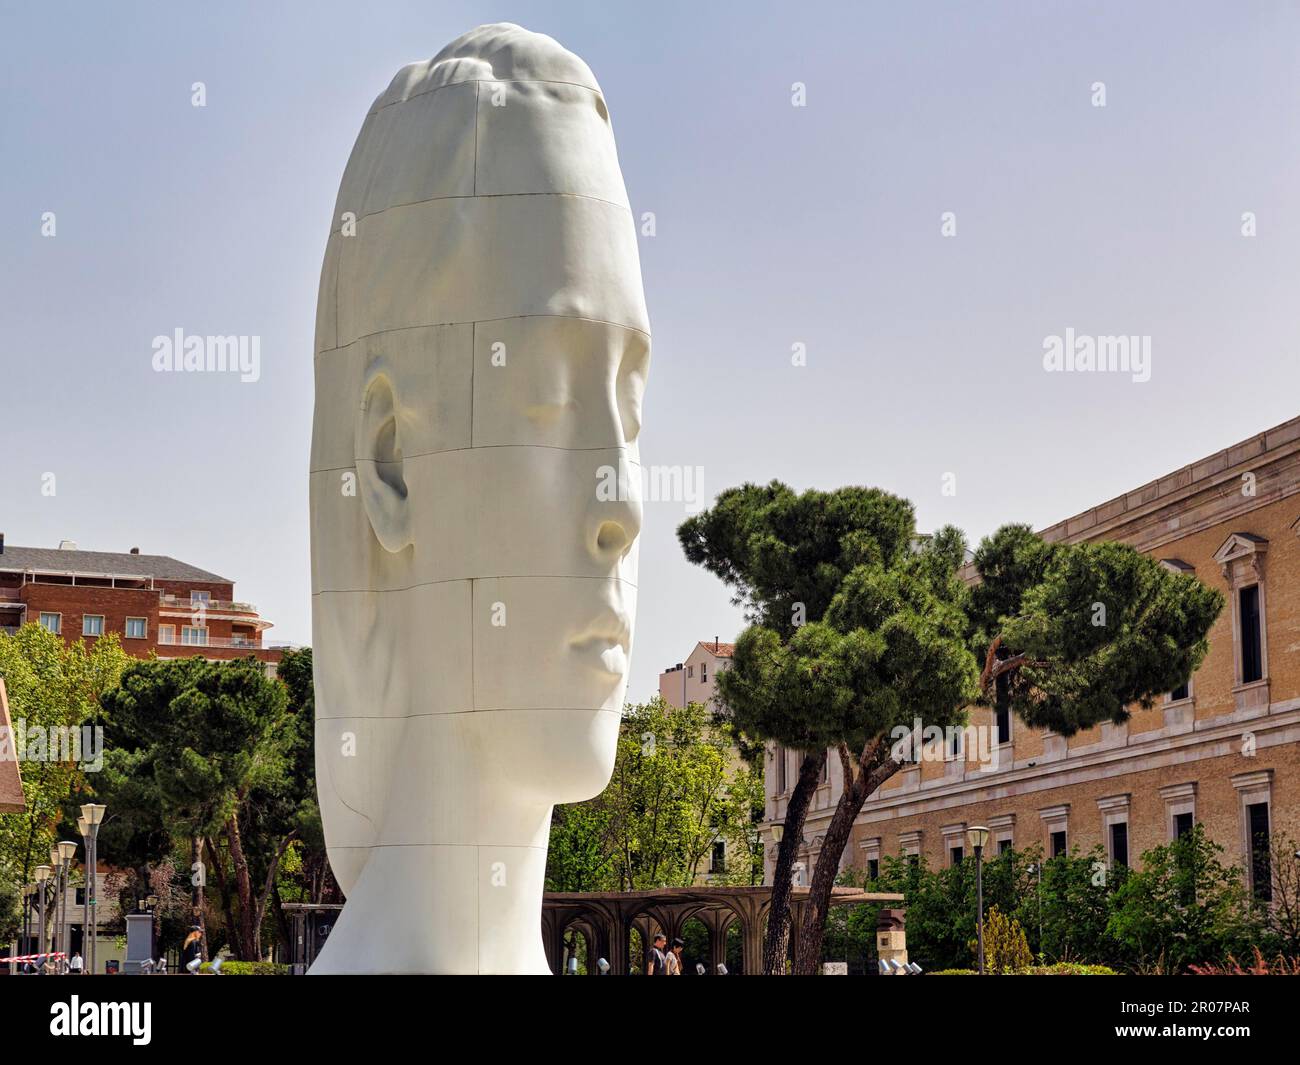 Sculpture Julia, sculpteur Jaume Plensa, tête géante aux yeux fermés, Plaza de Colon, Madrid, Espagne Banque D'Images